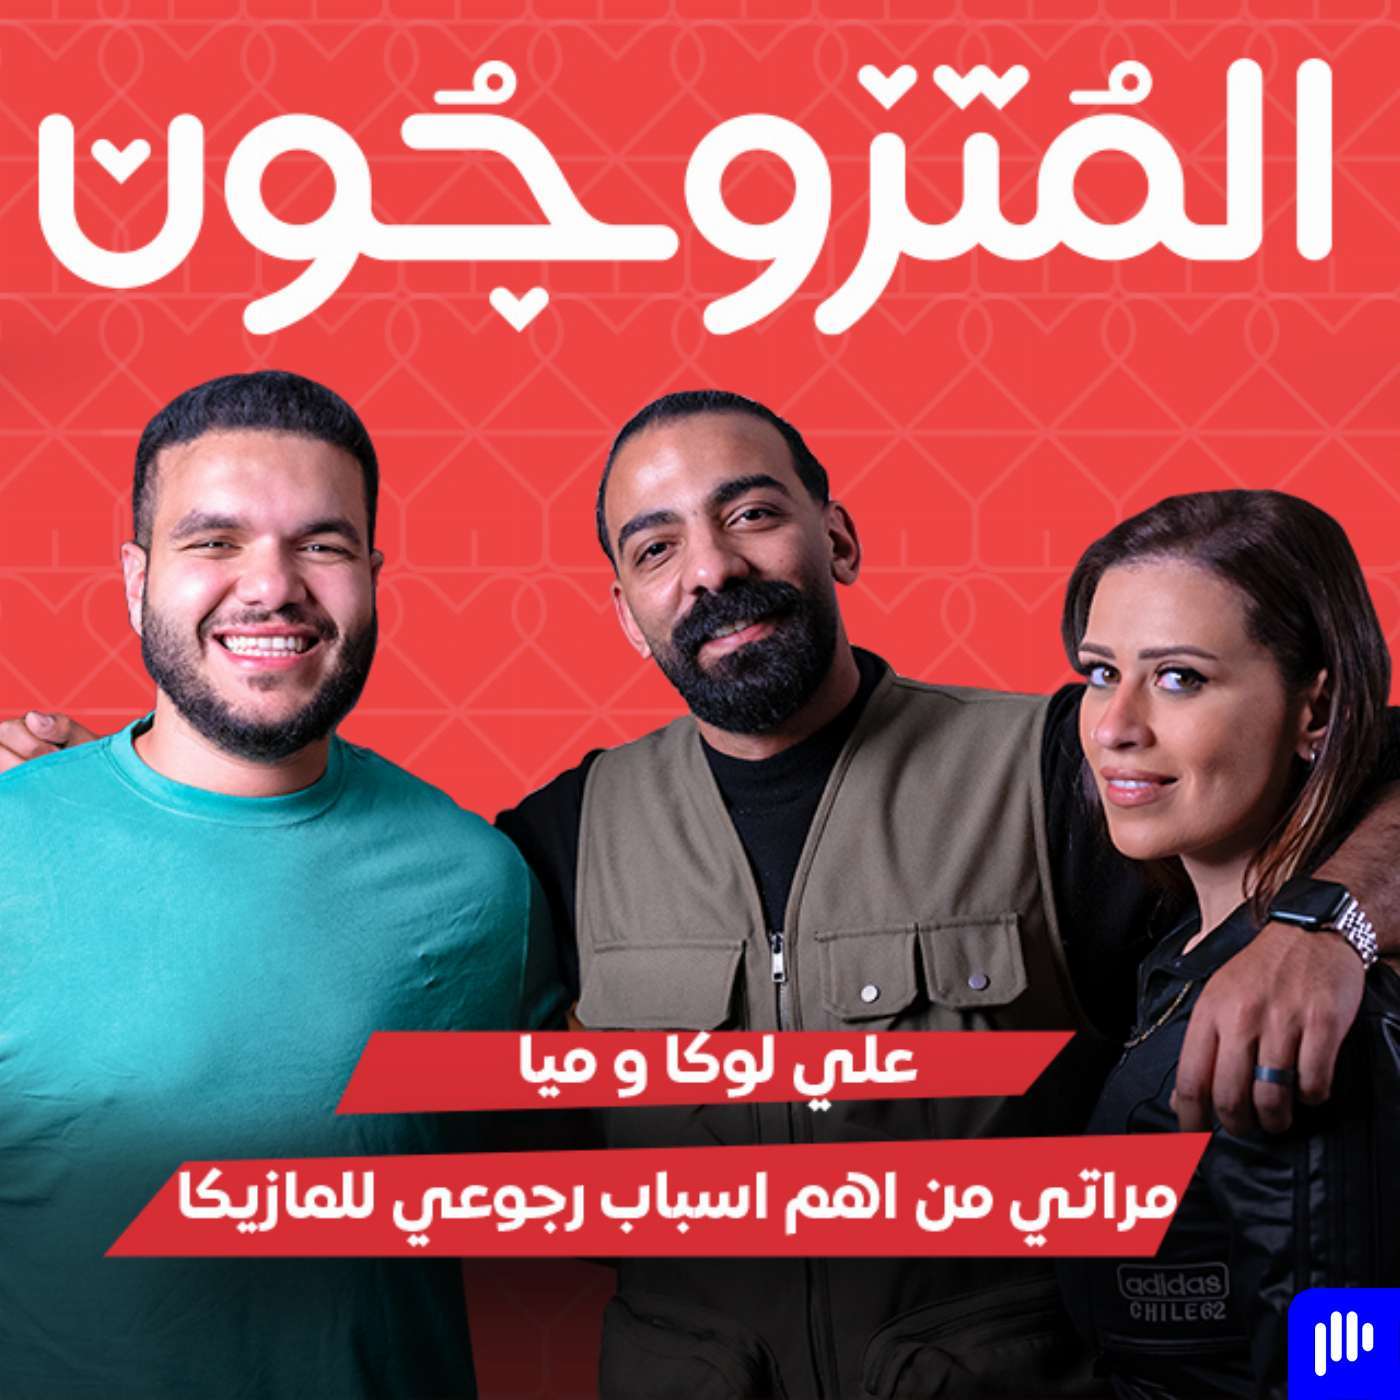 بودكاست المتزوجون الحلقة الثانية l مراتي من اهم اسباب رجوعي للمزيكا - علي لوكا و ميا